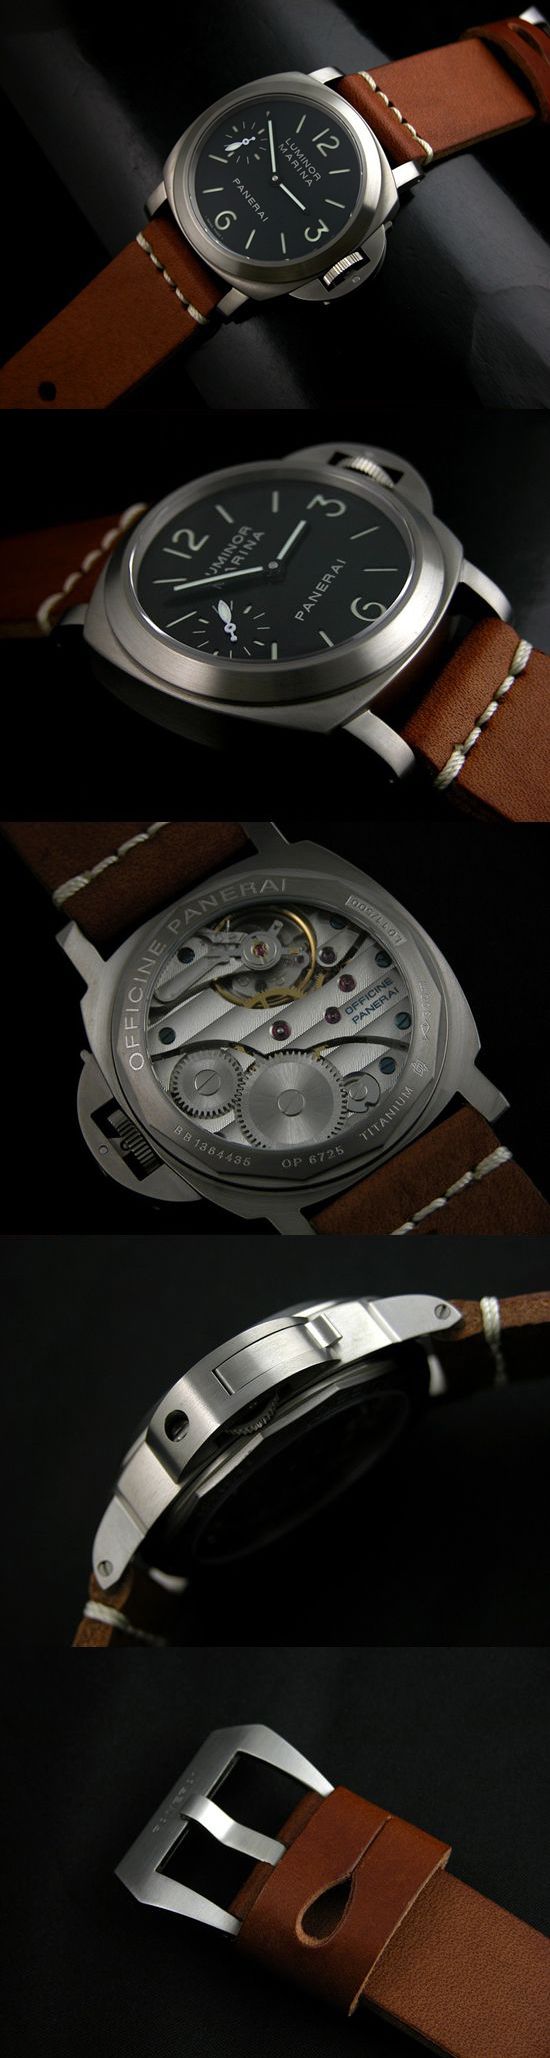 おしゃれなブランド時計がパネライ-ルミノールマリーナ-PANERAI-PAM177-bd-男性用を提供します.